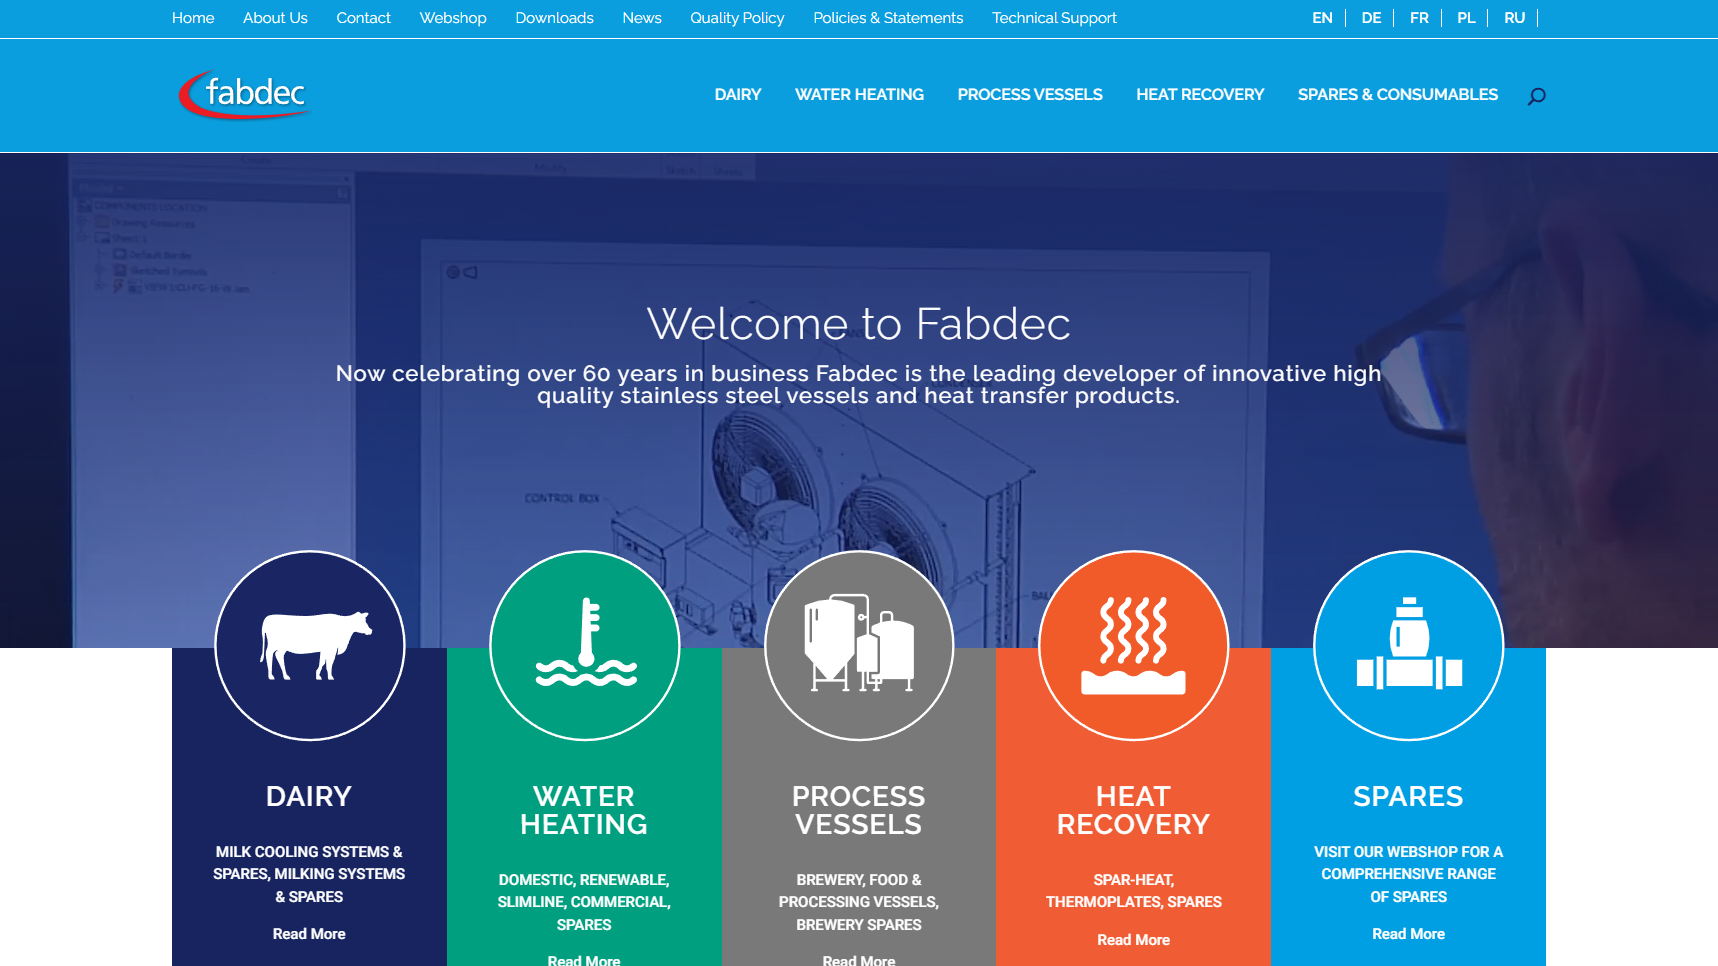 Fabdec - Dairy Equipment Manufacturer